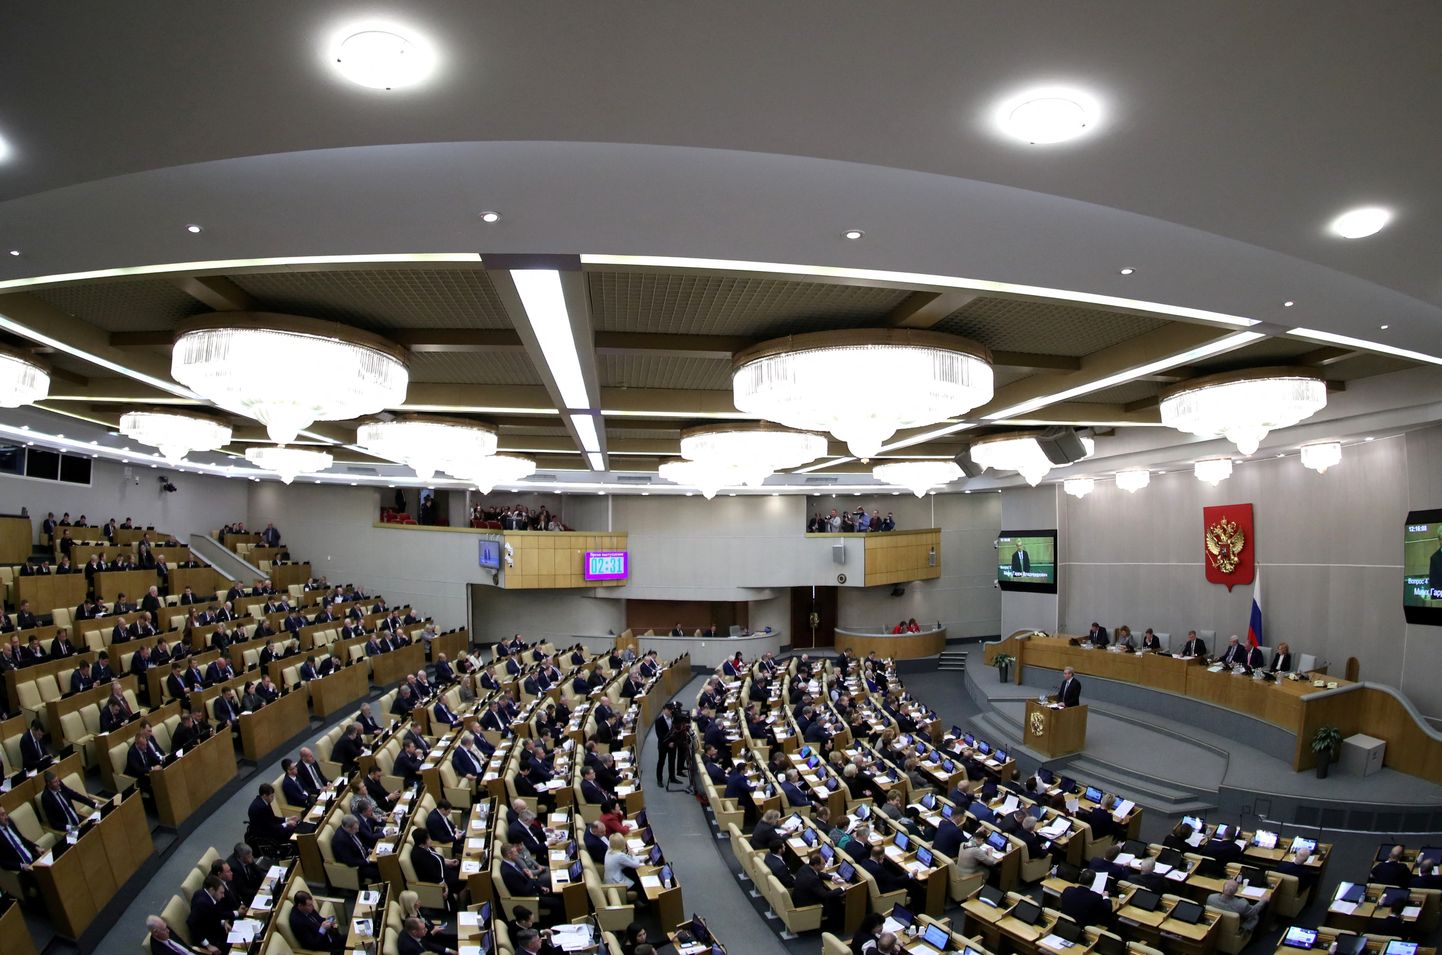 Vene riigiduuma istungisaal.